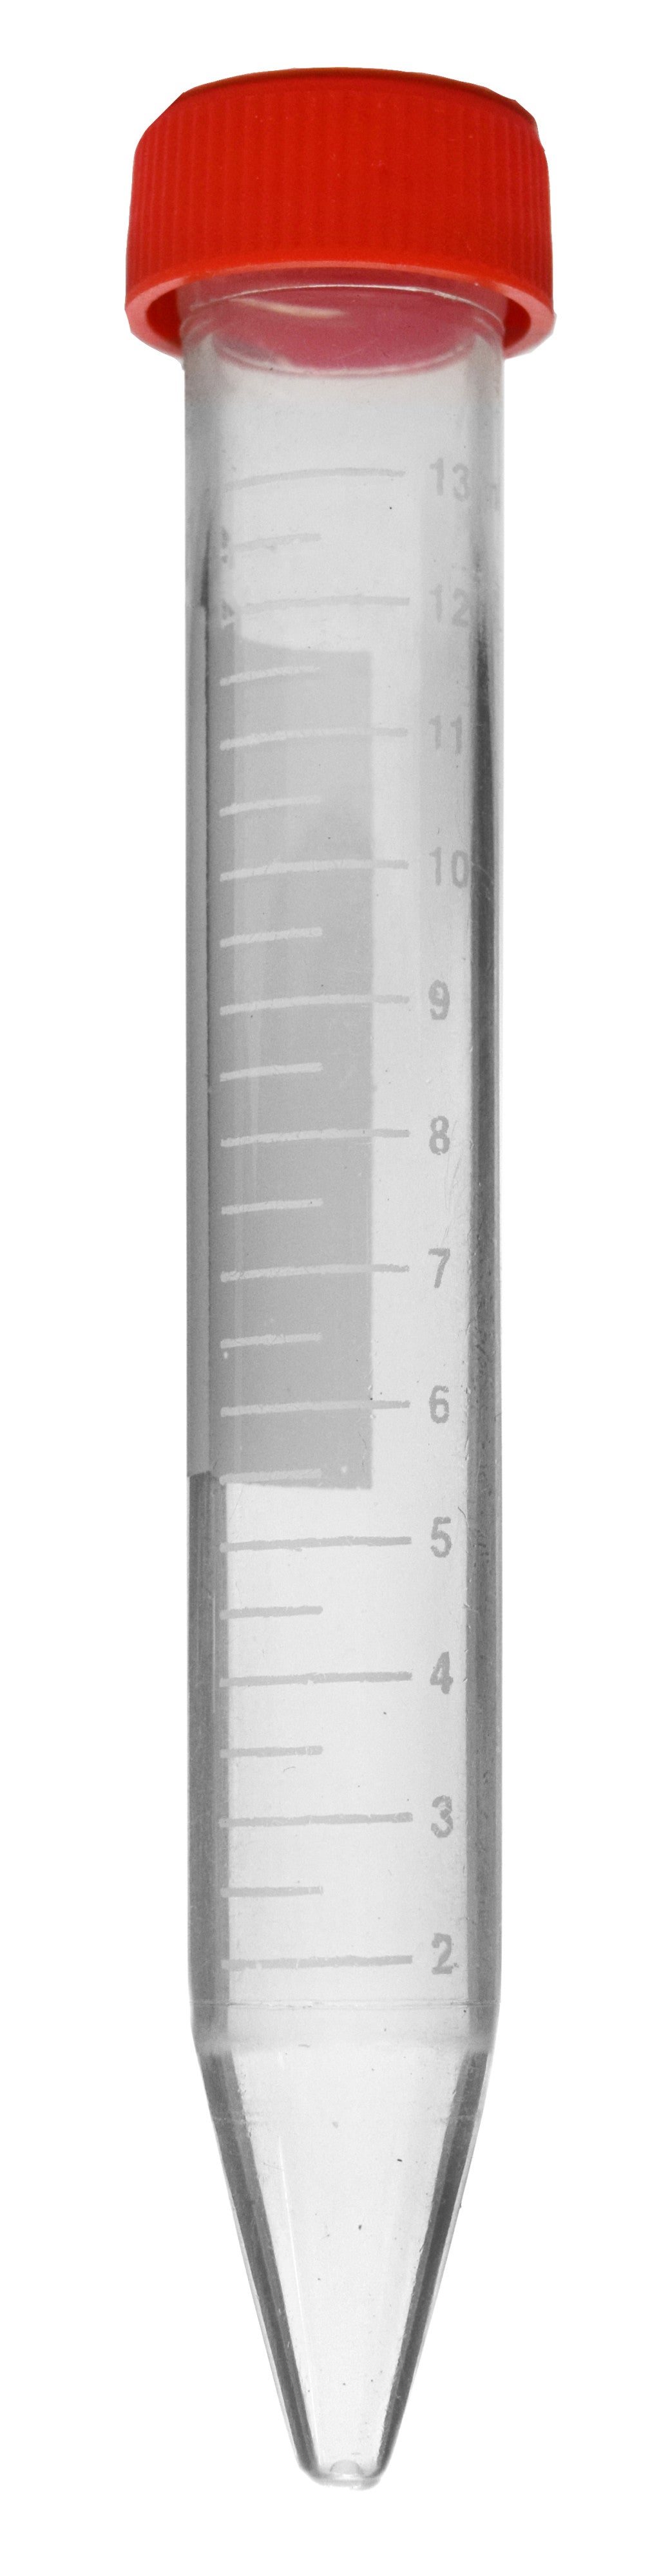 Polypropylene Conical Centrifuge Tubes, Graduated, 15 ml, PK/50